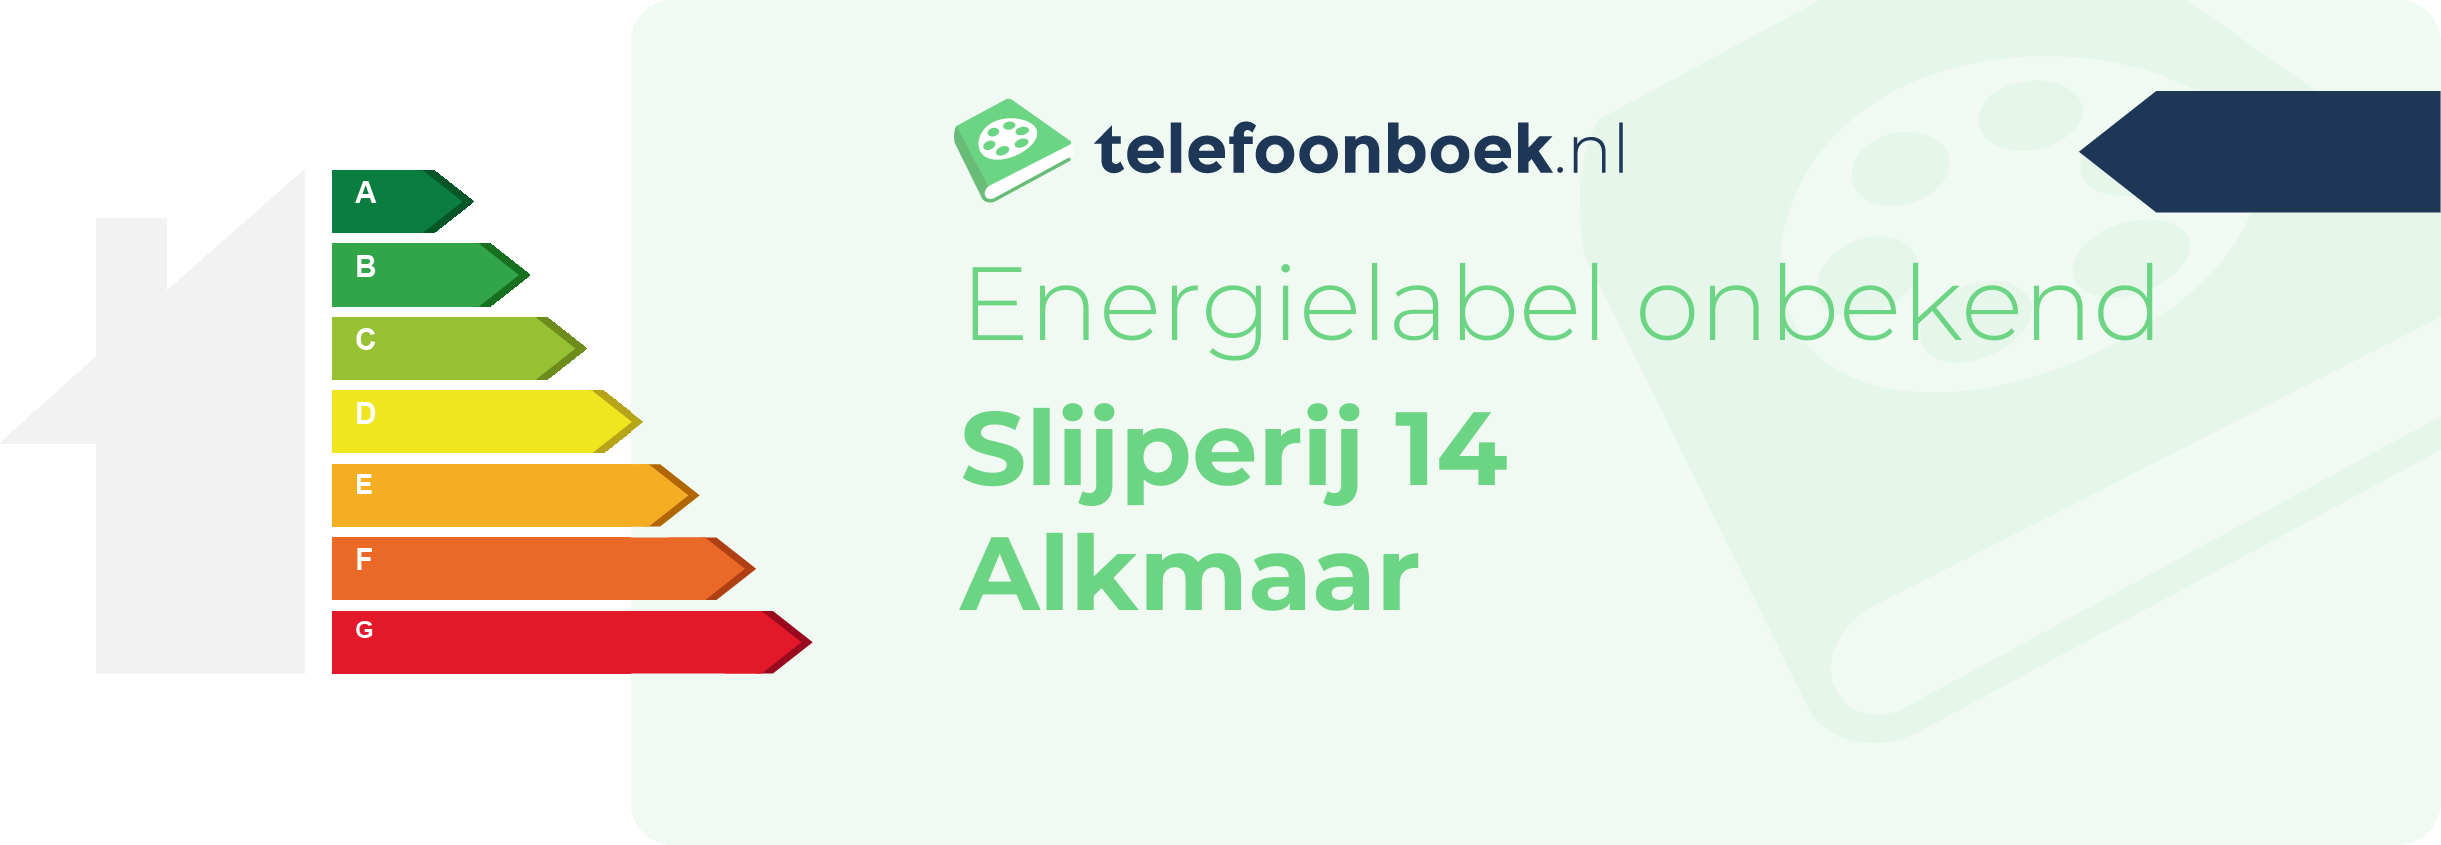 Energielabel Slijperij 14 Alkmaar